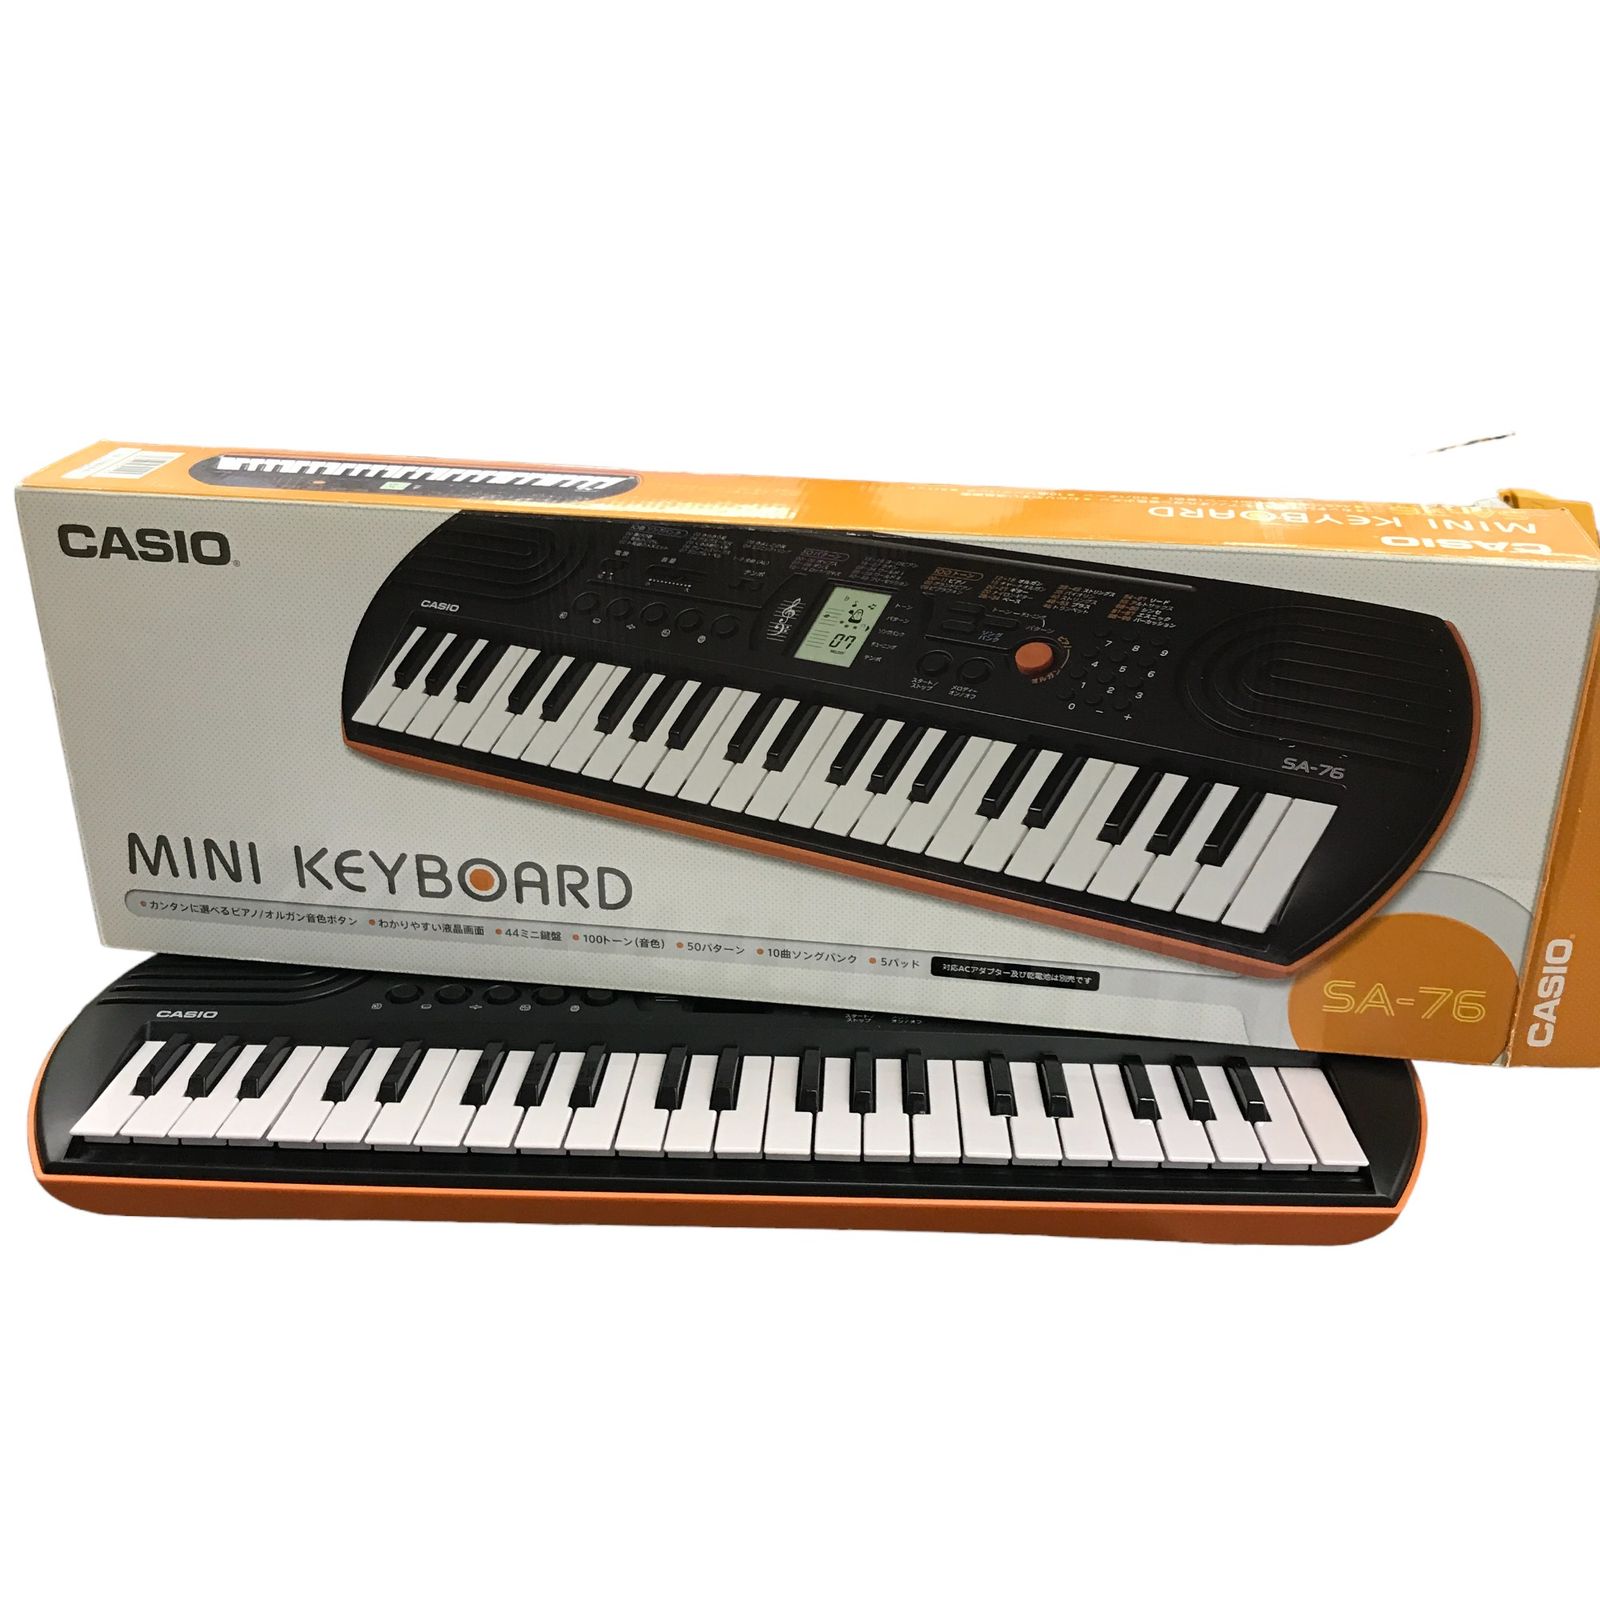 CASIO 44ミニ鍵盤 電子キーボード SA-76 ブラック&オレンジ 中古 1